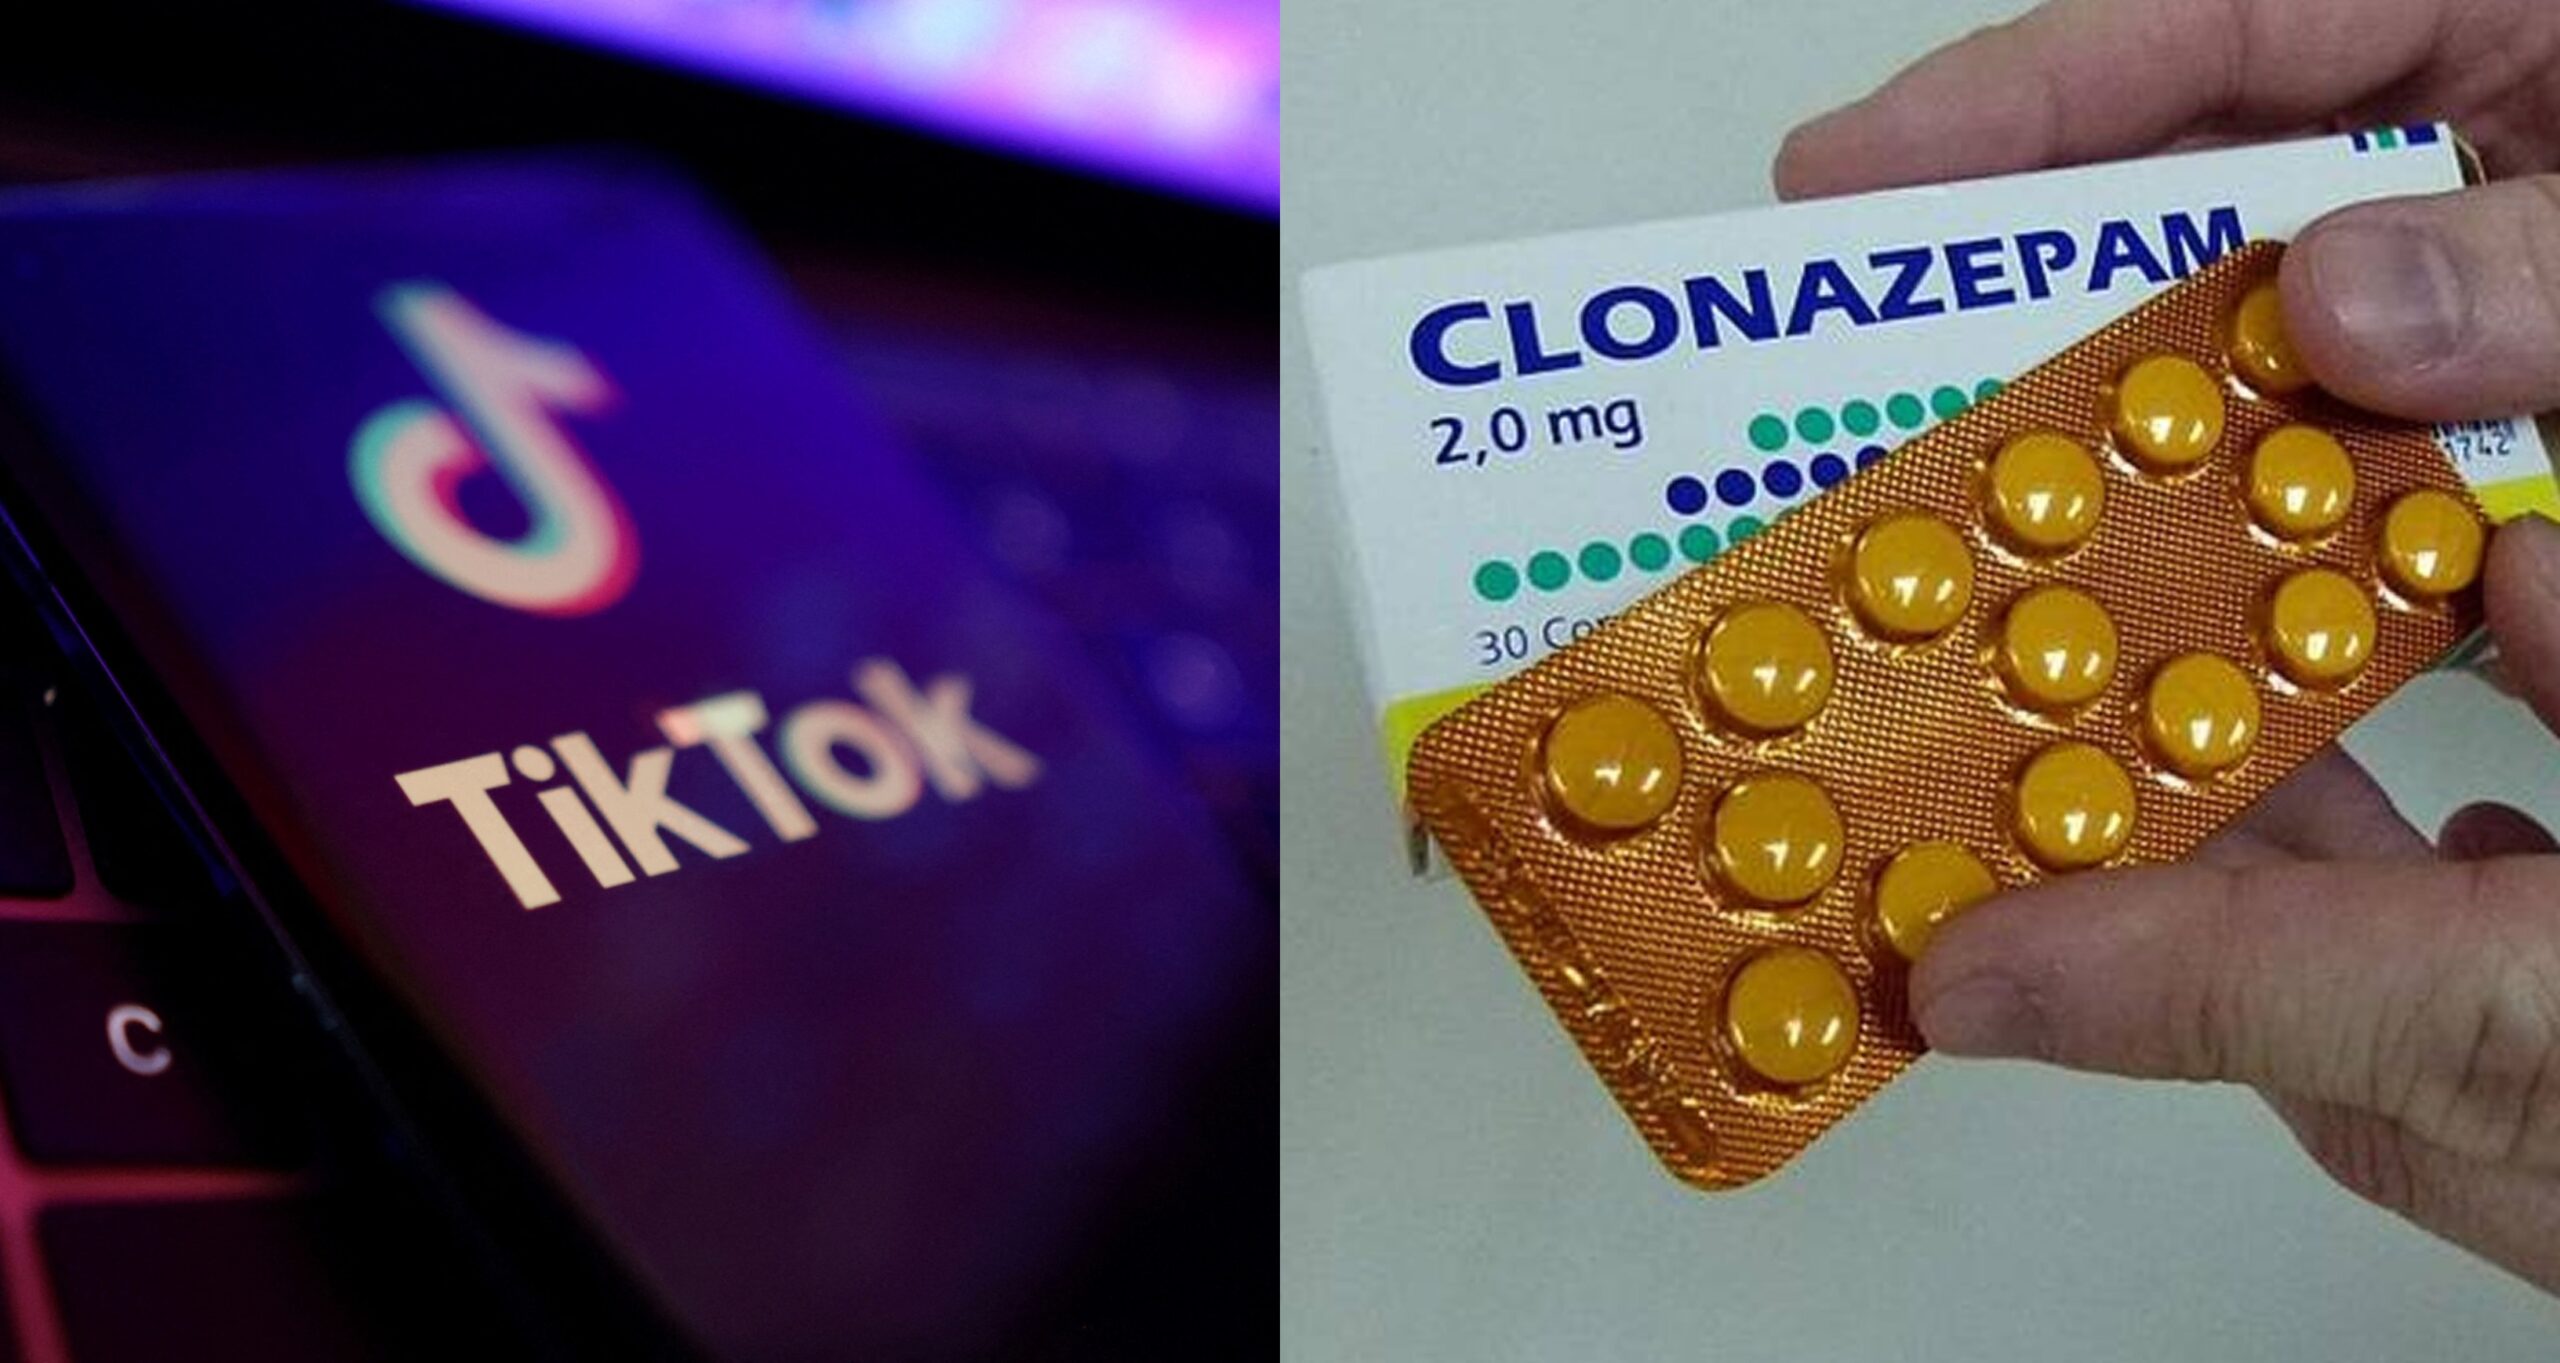 Jóvenes consumen un medicamento por un reto de redes sociales, en Ecuador se hizo un control en farmacias